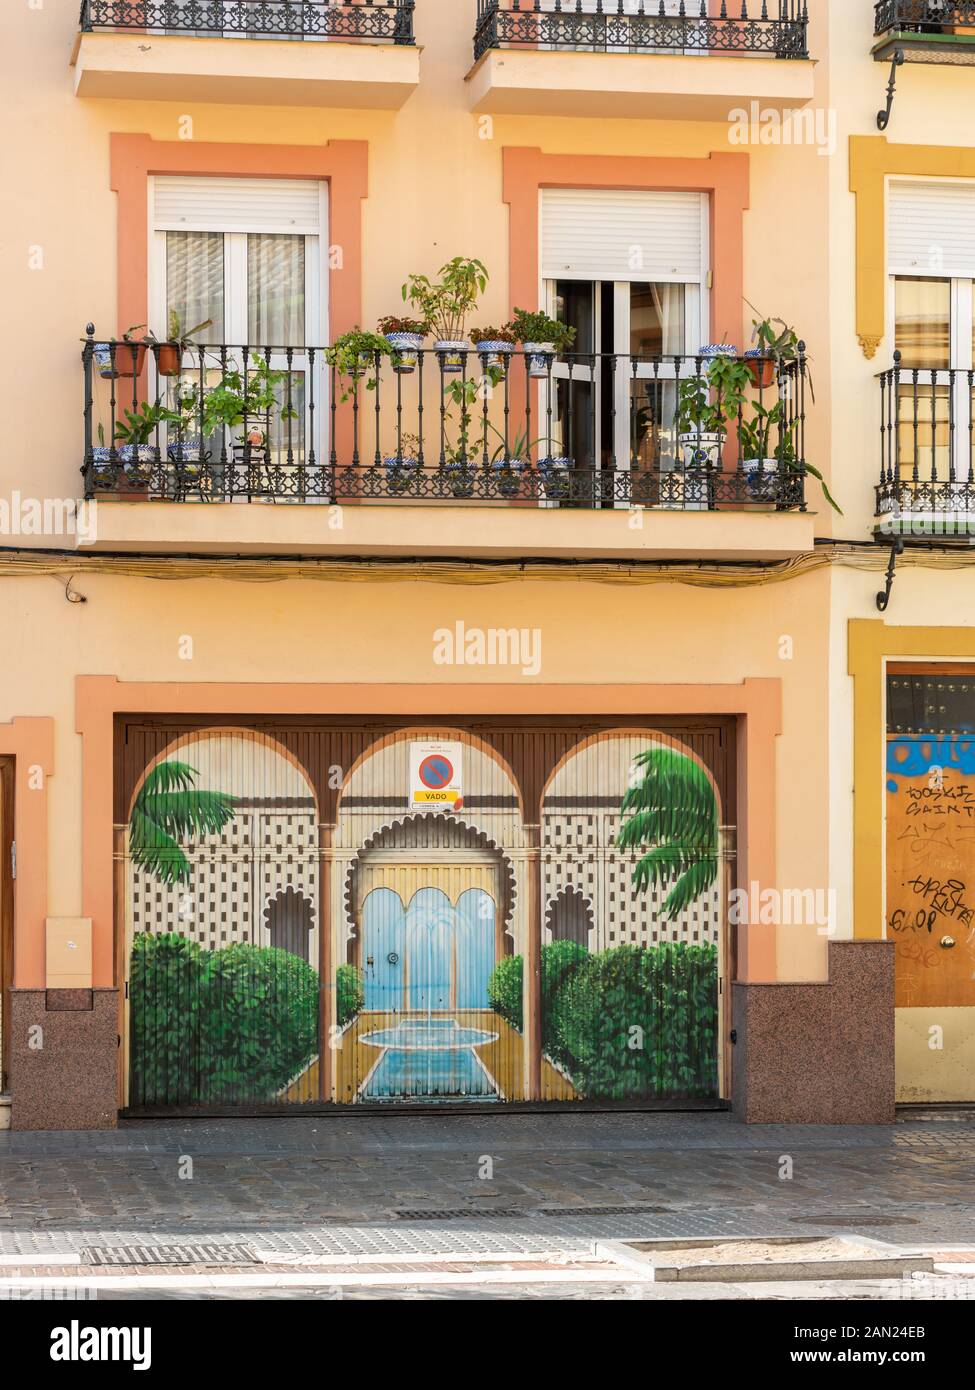 Une maison colorée sur la Plaza San Juan de la Palma avec son balcon en fer forgé bordé de plantes en pot et sa cour ornée murale de jardin en contrebas. Banque D'Images